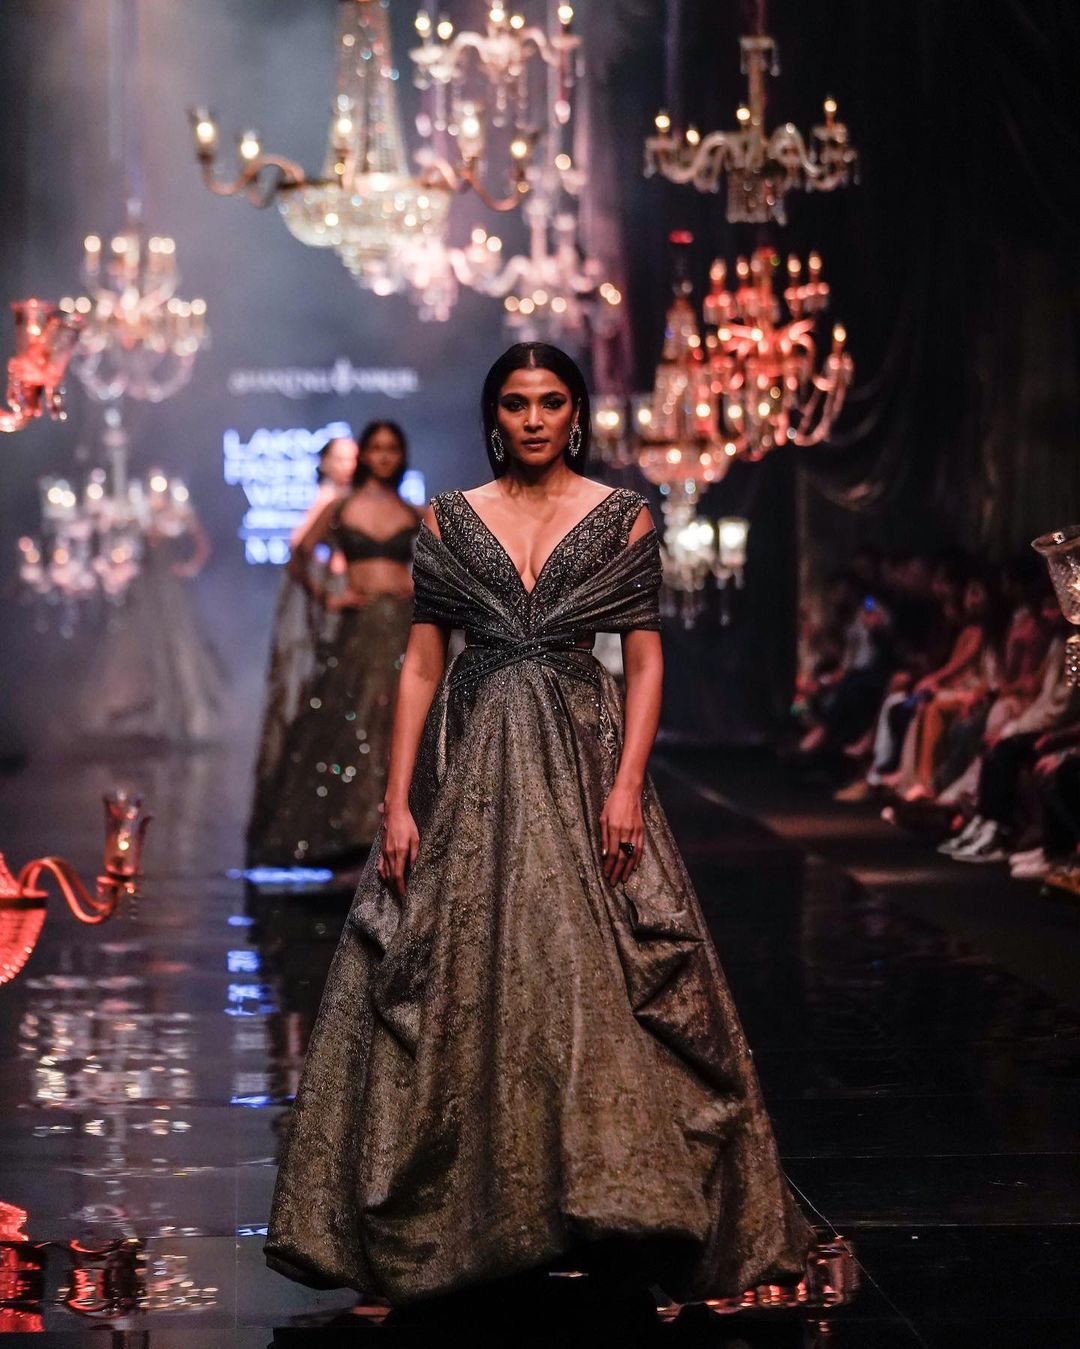 shantanu nikhil at lakme fashion week 2022